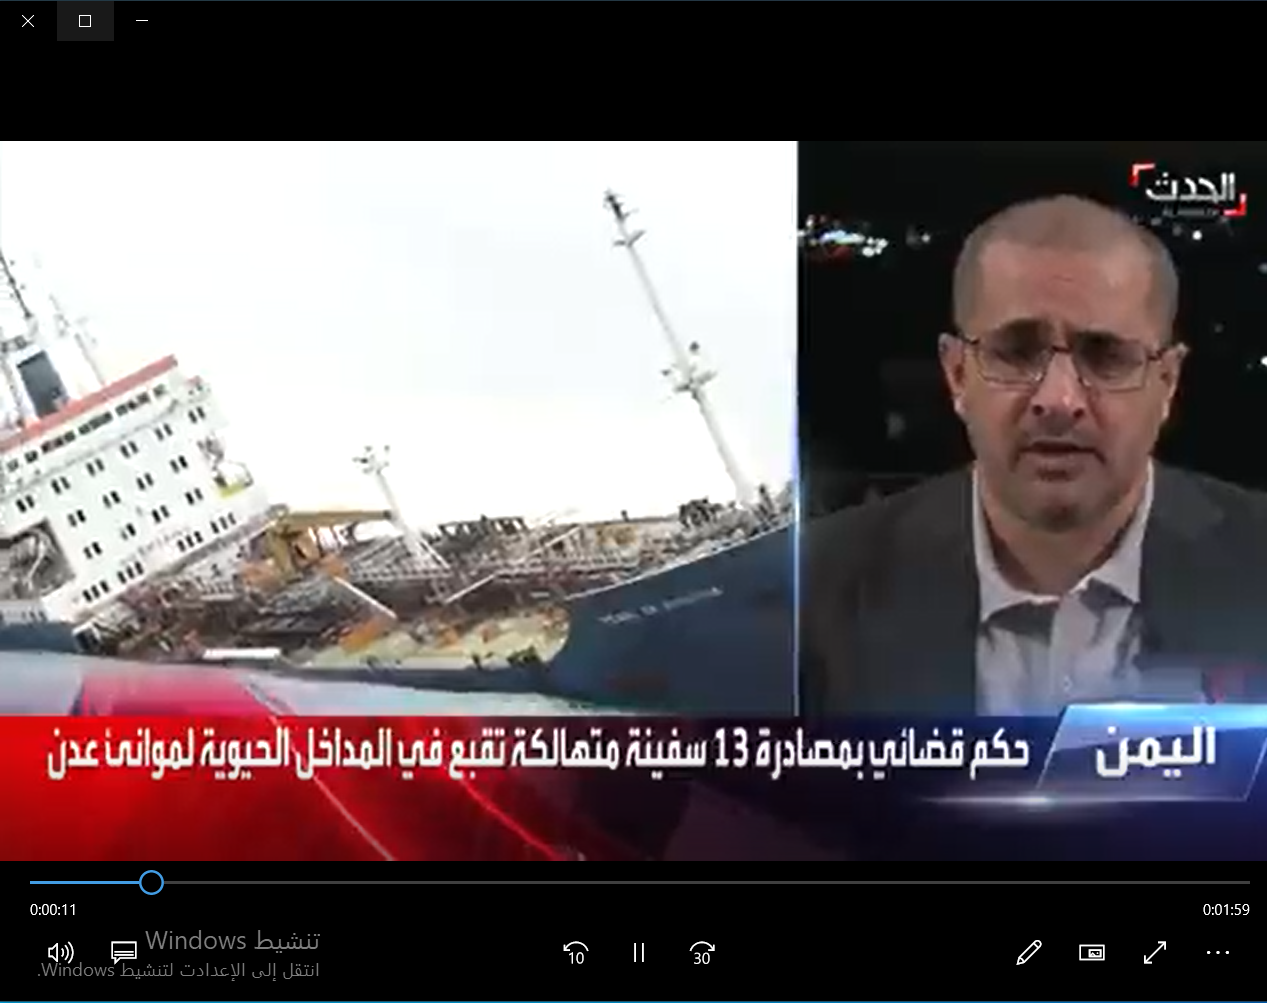 الدكتور محمد علوي امزربه رئيس مجلس إدارة ميناء عدن لقناة الحدث: